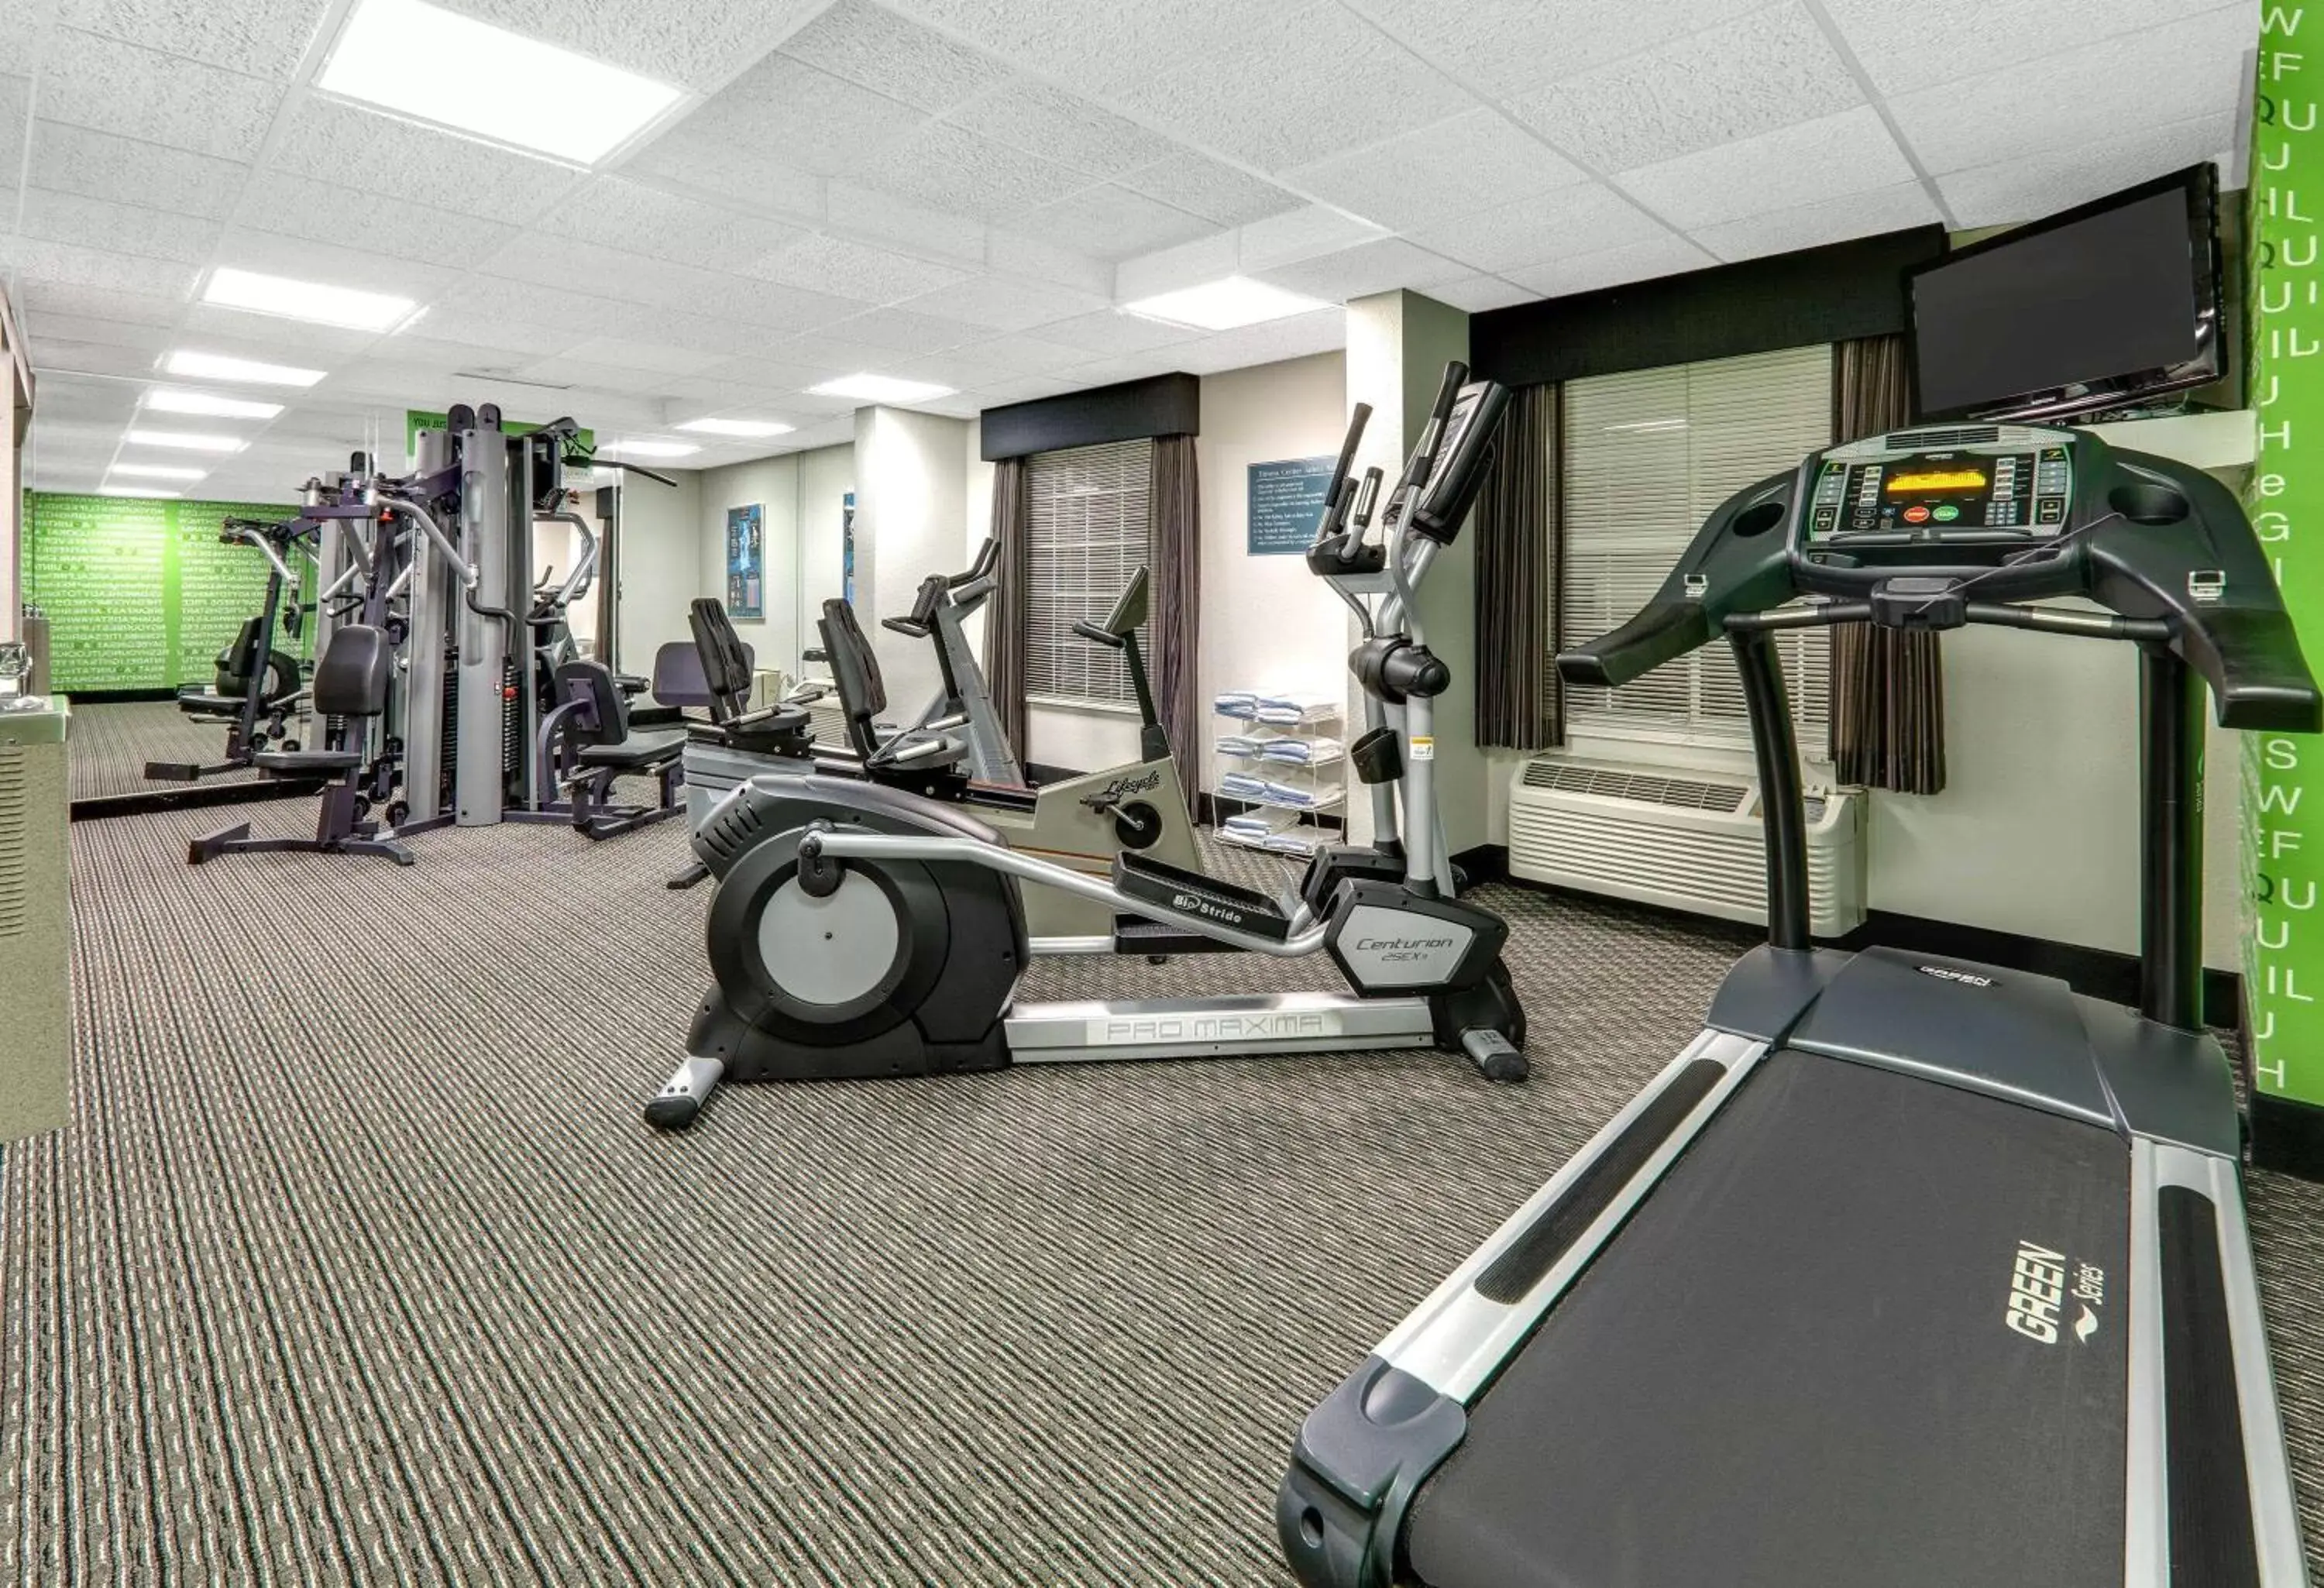 Fitness centre/facilities, Fitness Center/Facilities in La Quinta by Wyndham Dallas - Addison Galleria